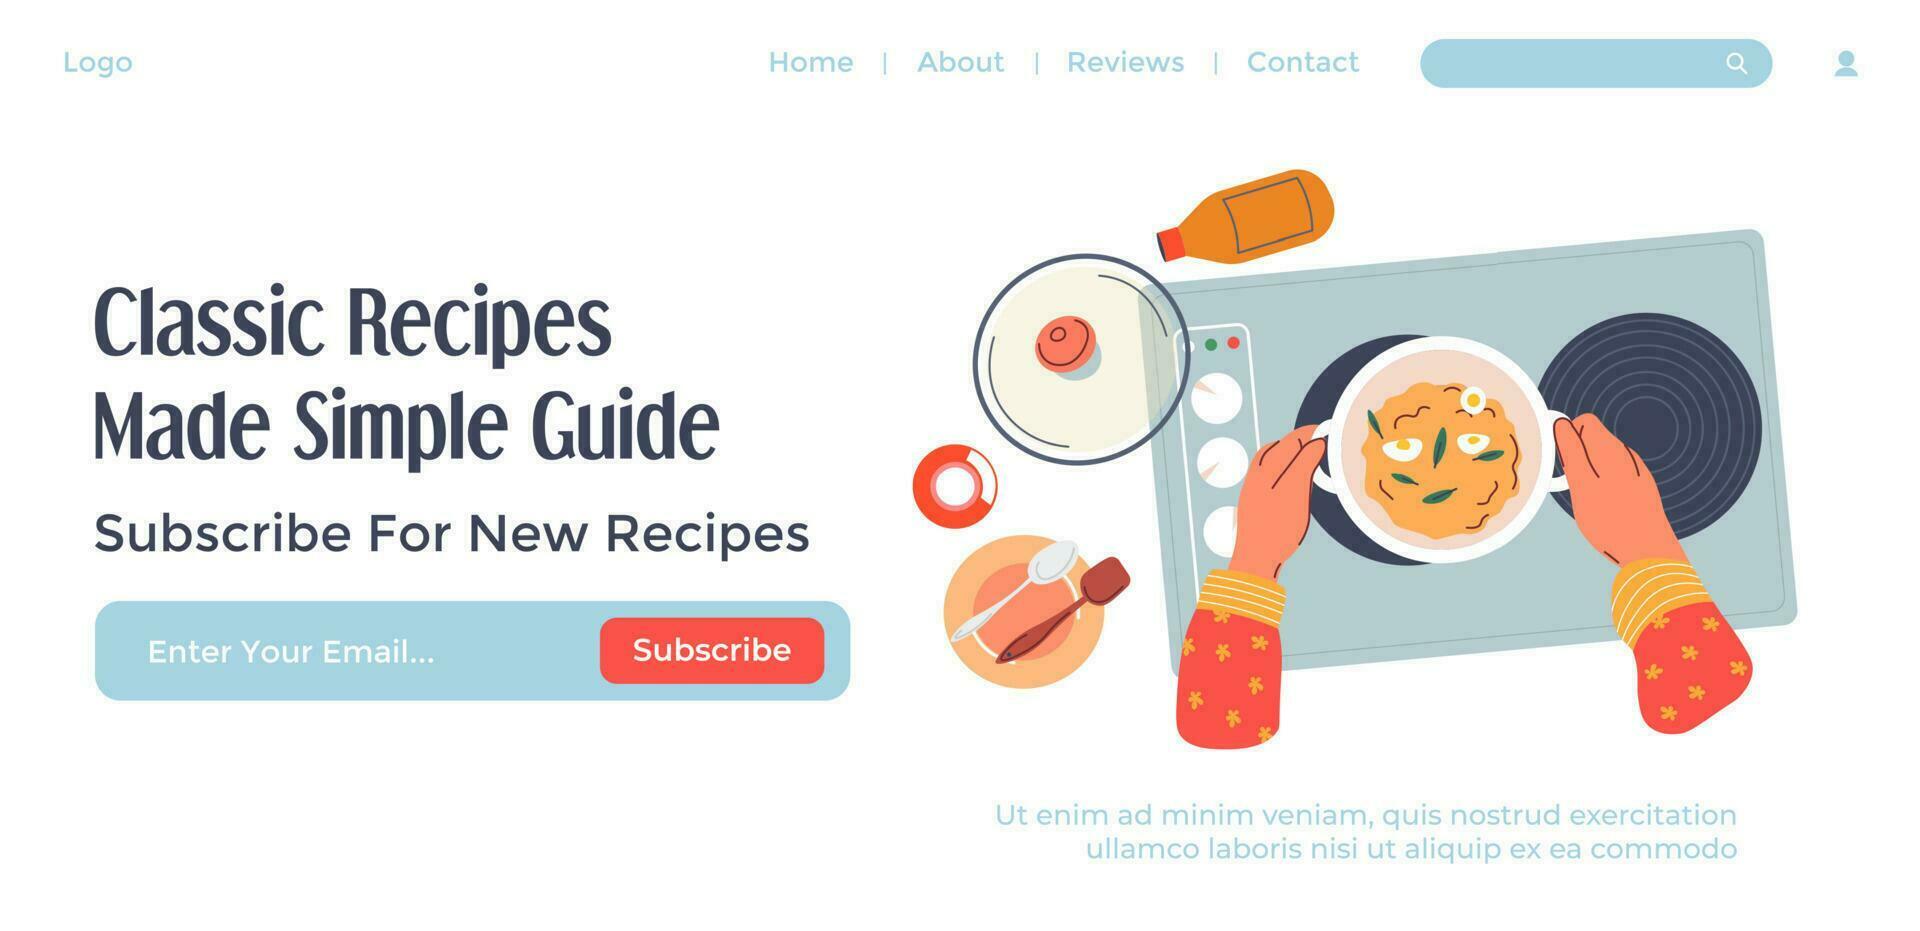 klassiek recepten, gemaakt gemakkelijk gids website plaats vector